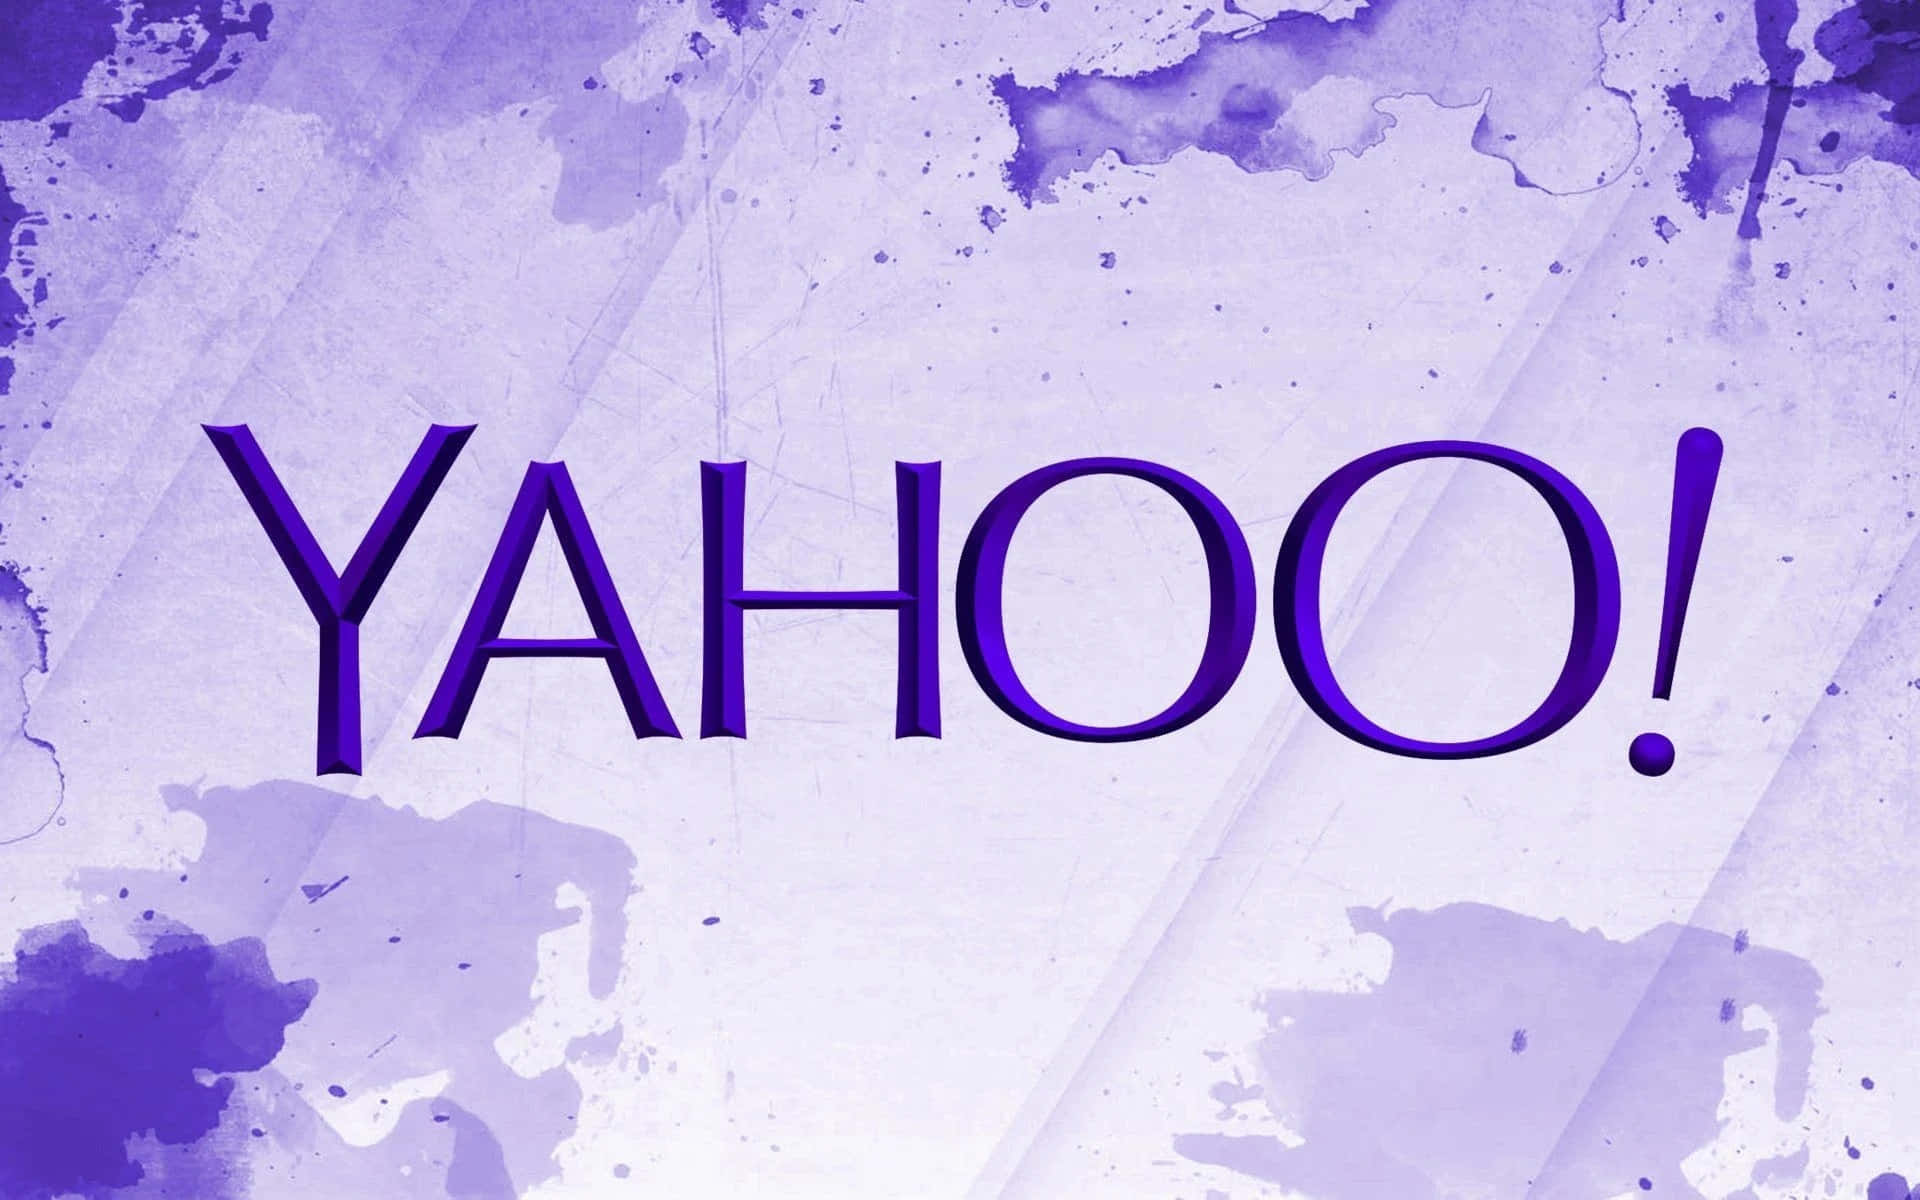 Diehervorrufung Von Yahoos Marke Als Quelle Für Innovation